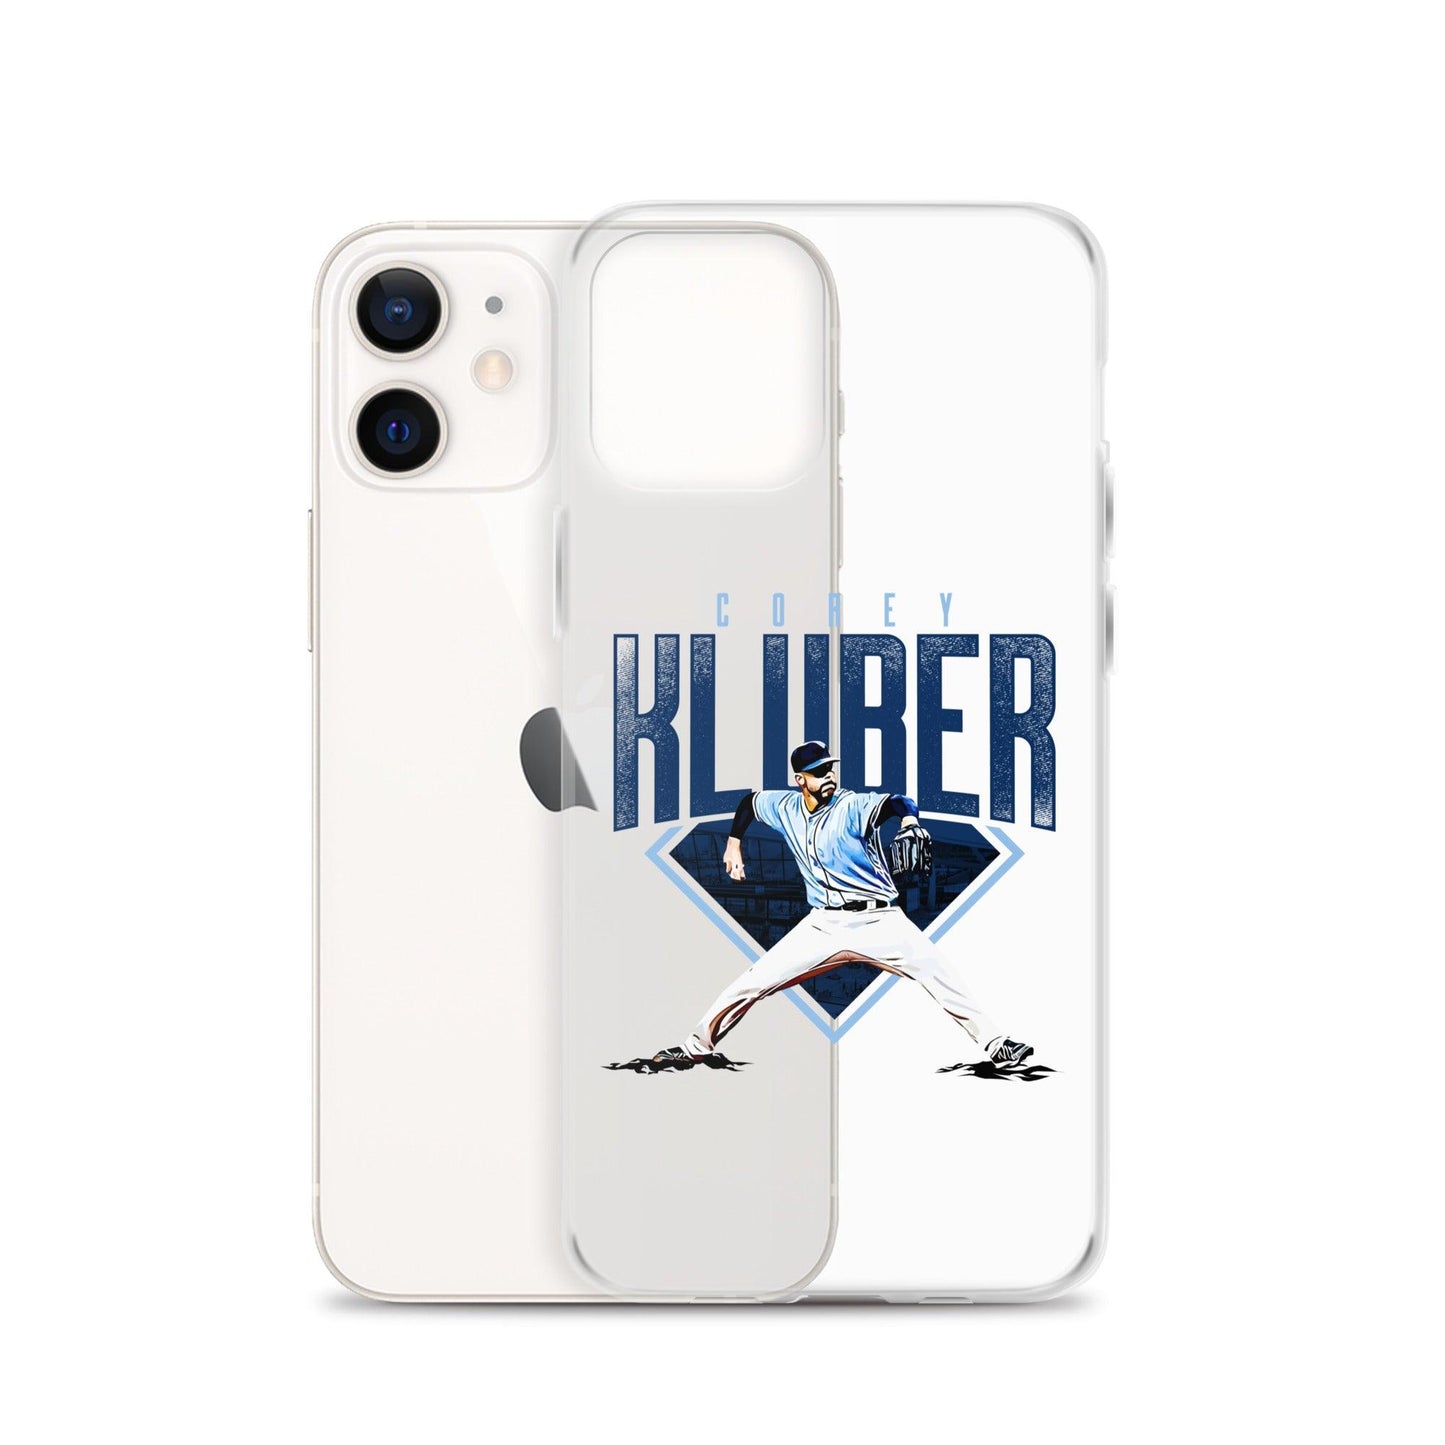 Corey Kluber "Ace" iPhone Case - Fan Arch